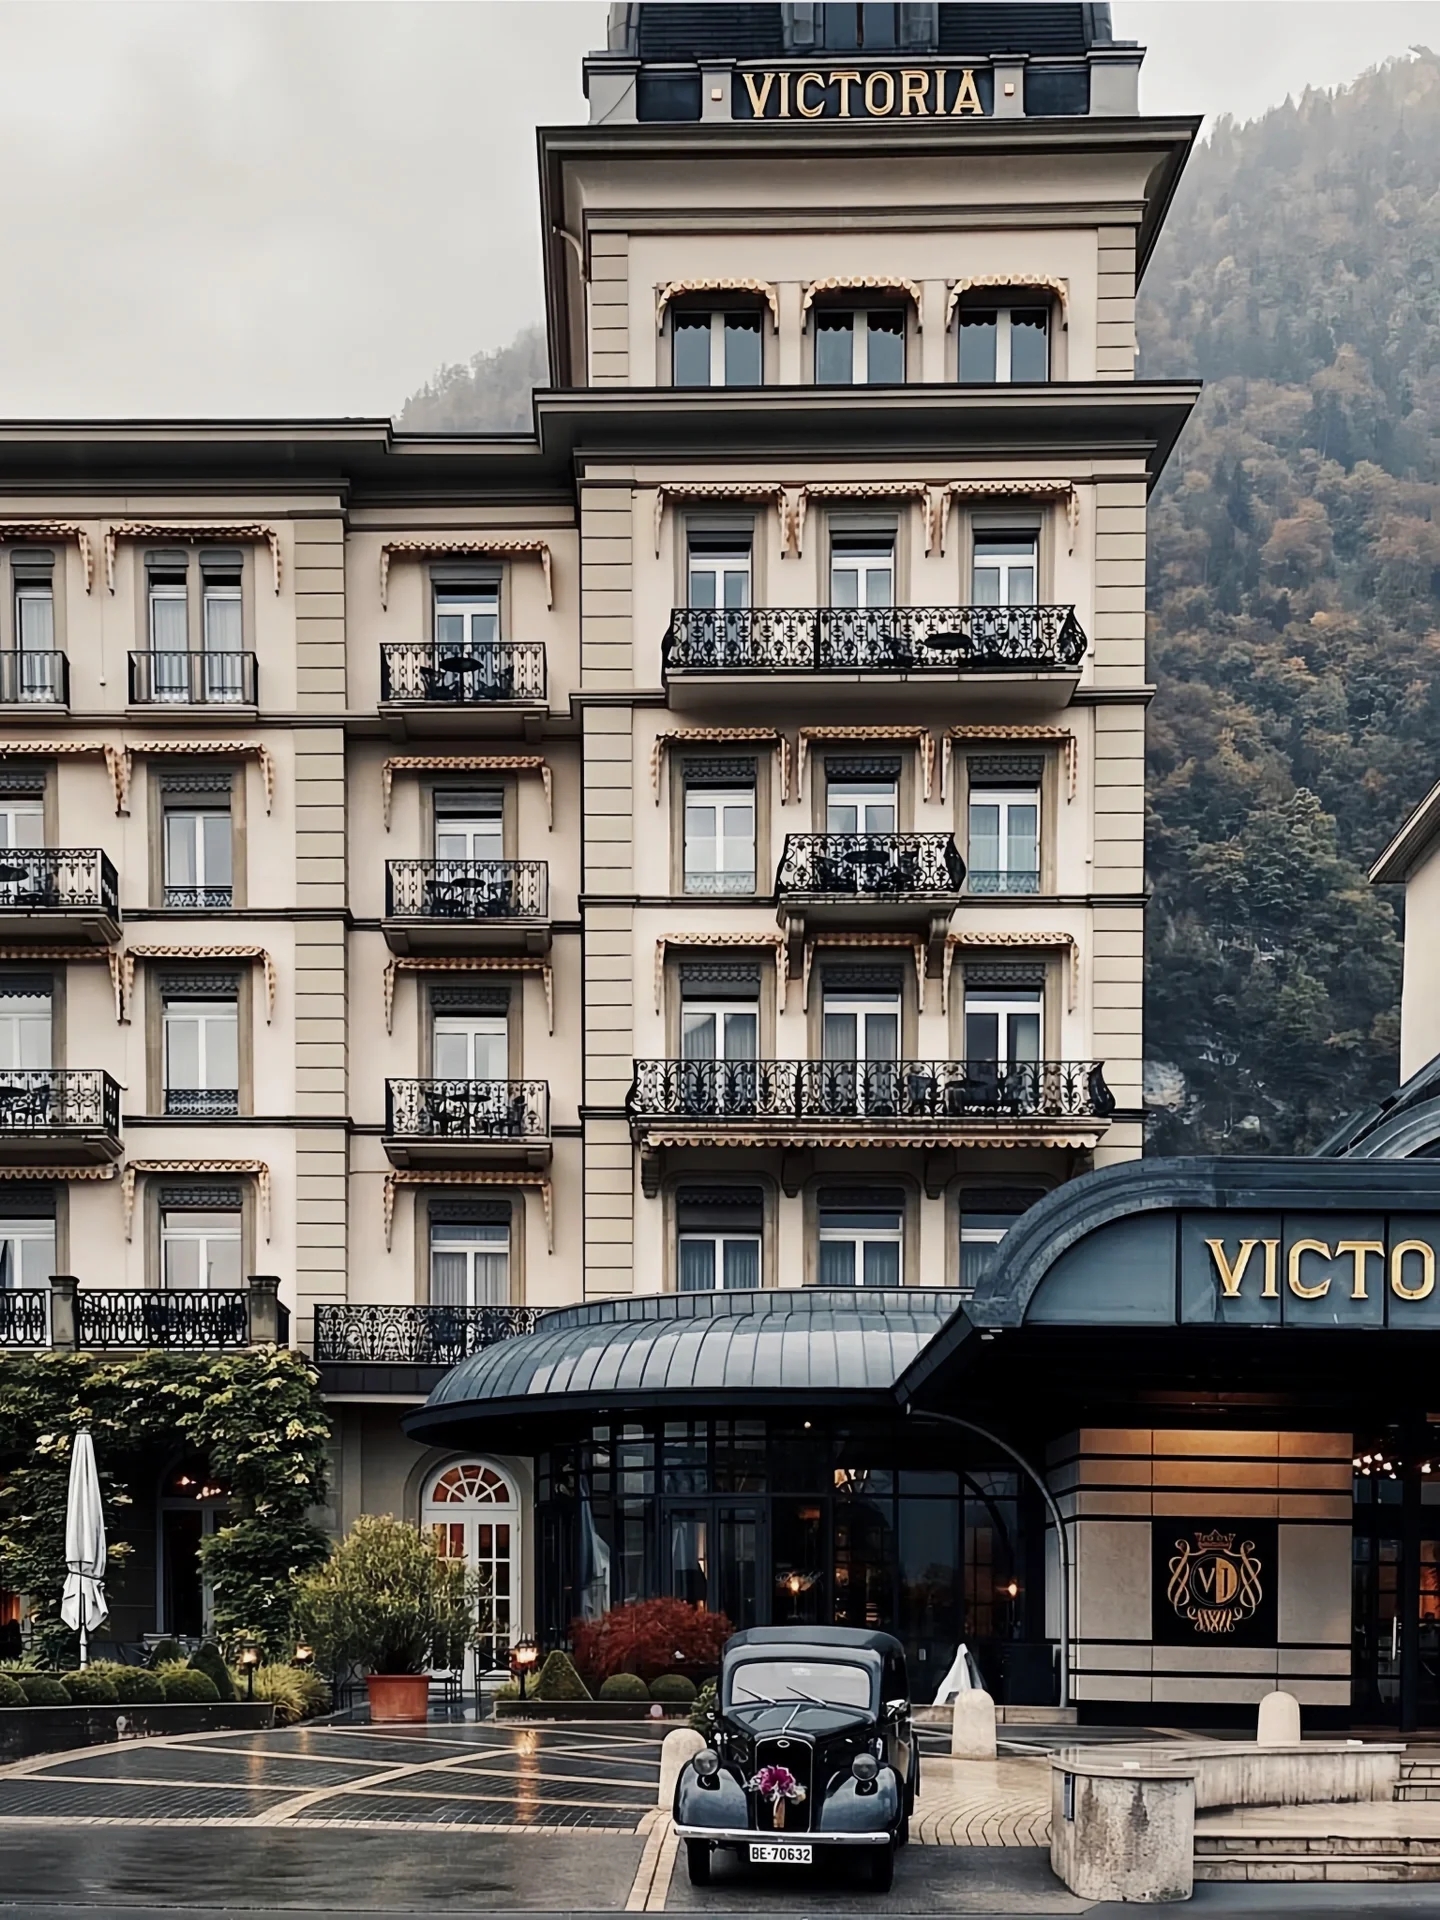 孙艺珍玄彬同款 瑞士奢华酒店·直面少女峰|||Victoria Jungfrau Grand Hot